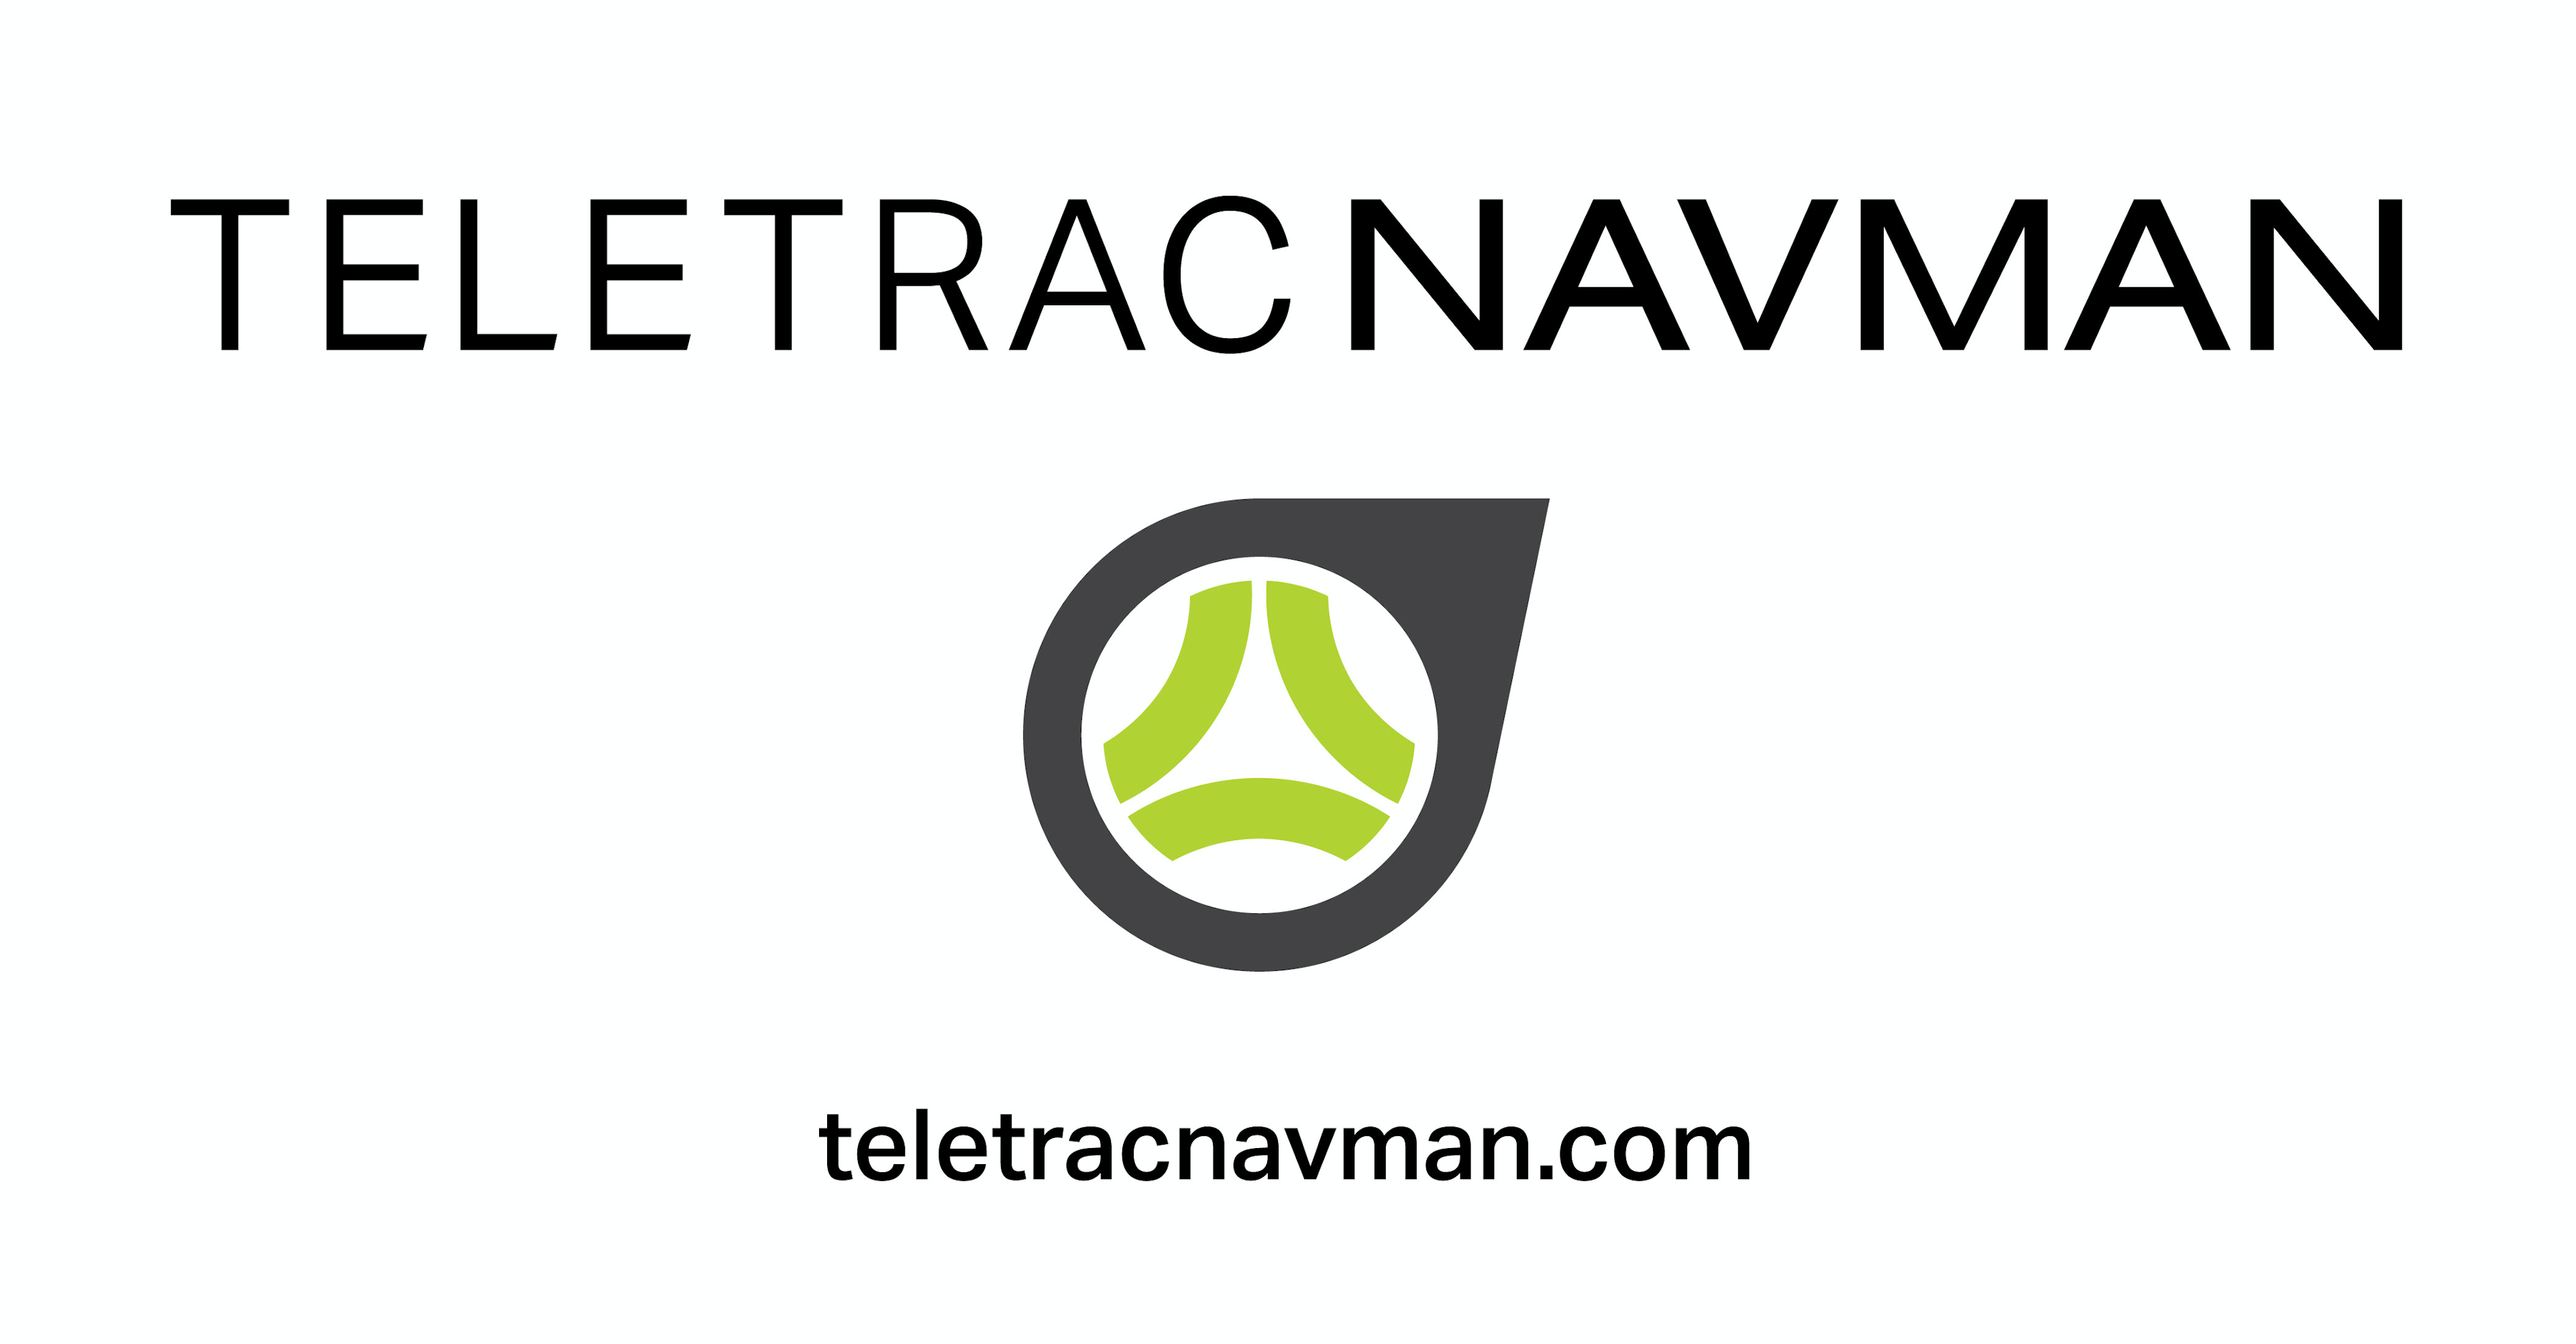 Teletrac Navman DIRECTOR Logo